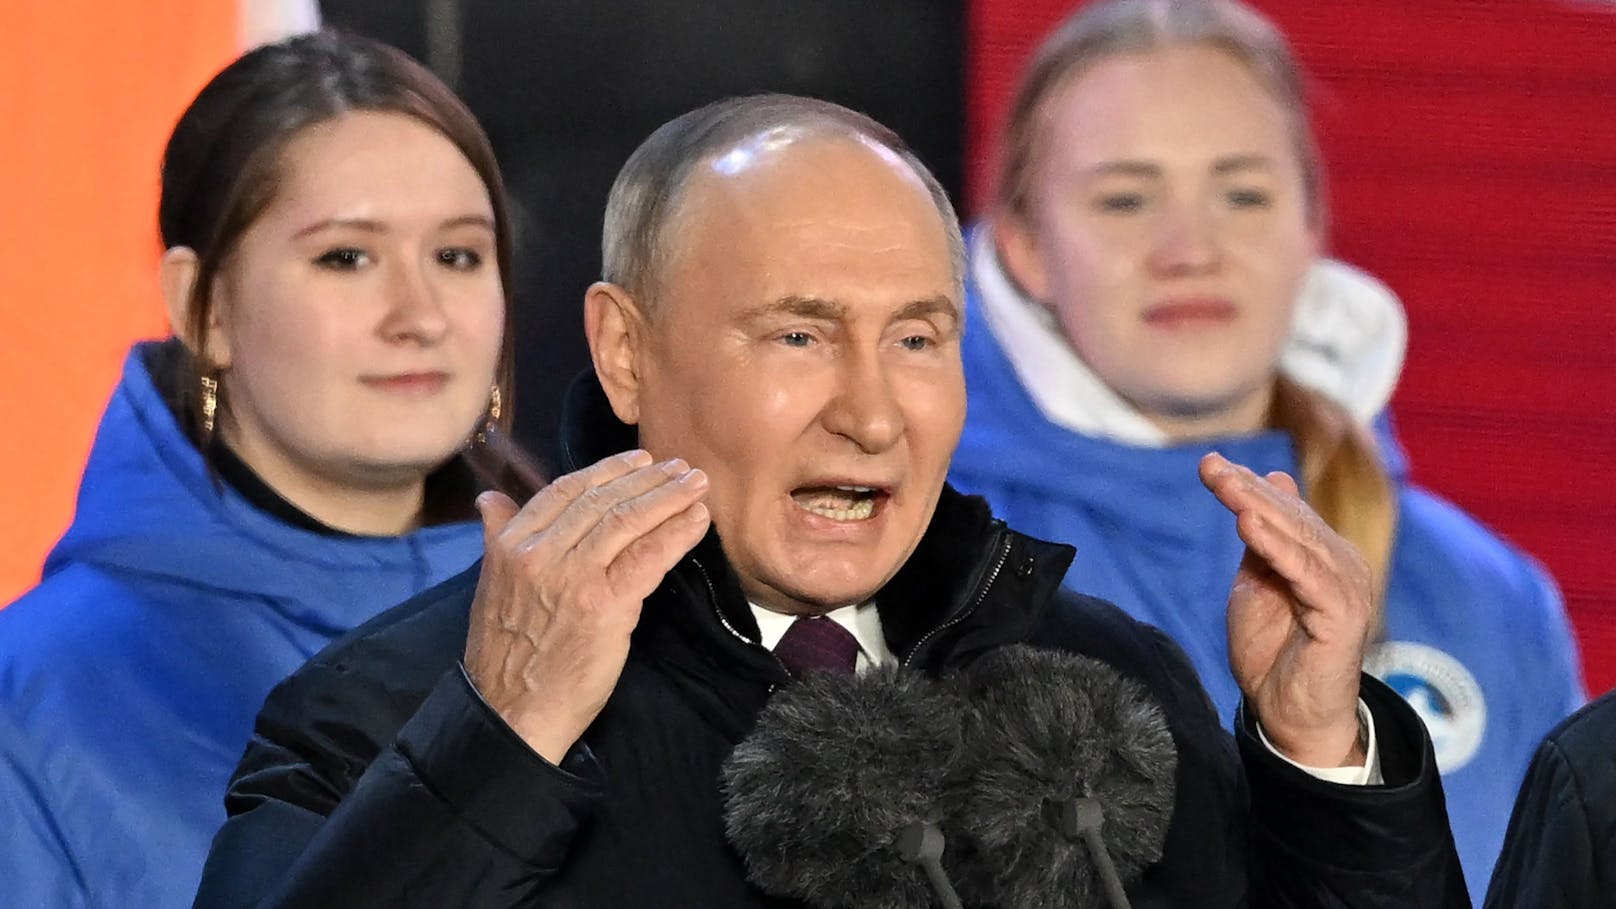 Wahre Pläne nach Wahl – das hat Putin jetzt vor